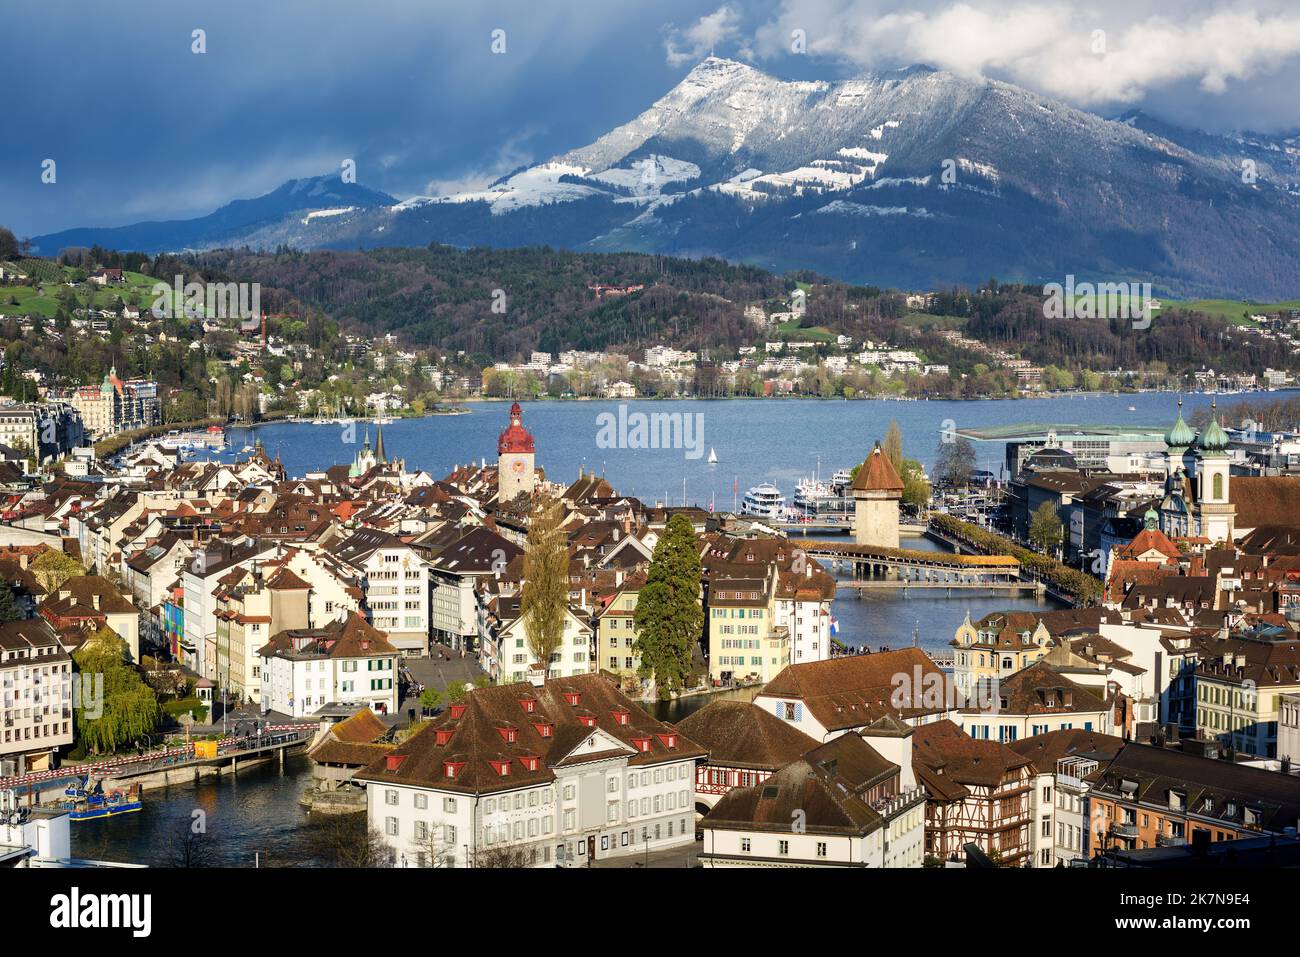 La vieille ville de Lucerne sur le lac de Lucerne et la neige couvraient le mont Rigi, les montagnes des Alpes suisses, la Suisse Banque D'Images